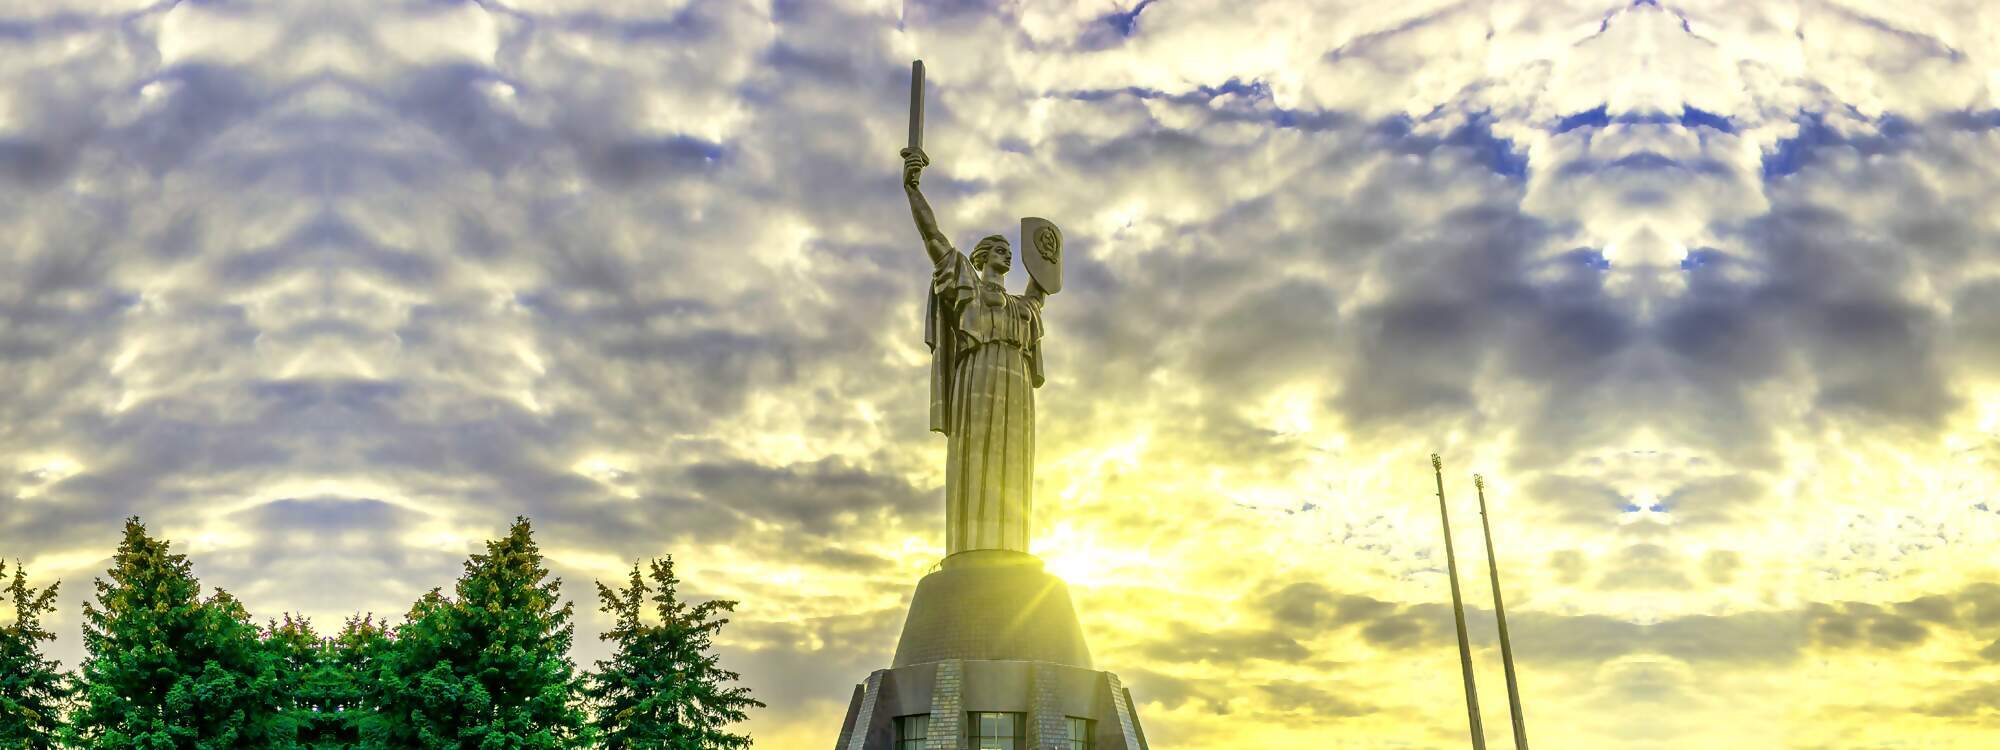 Das Mutterland Denkmal ist eine monumentale Statue in Kiew die Hauptstadt der Ukraine